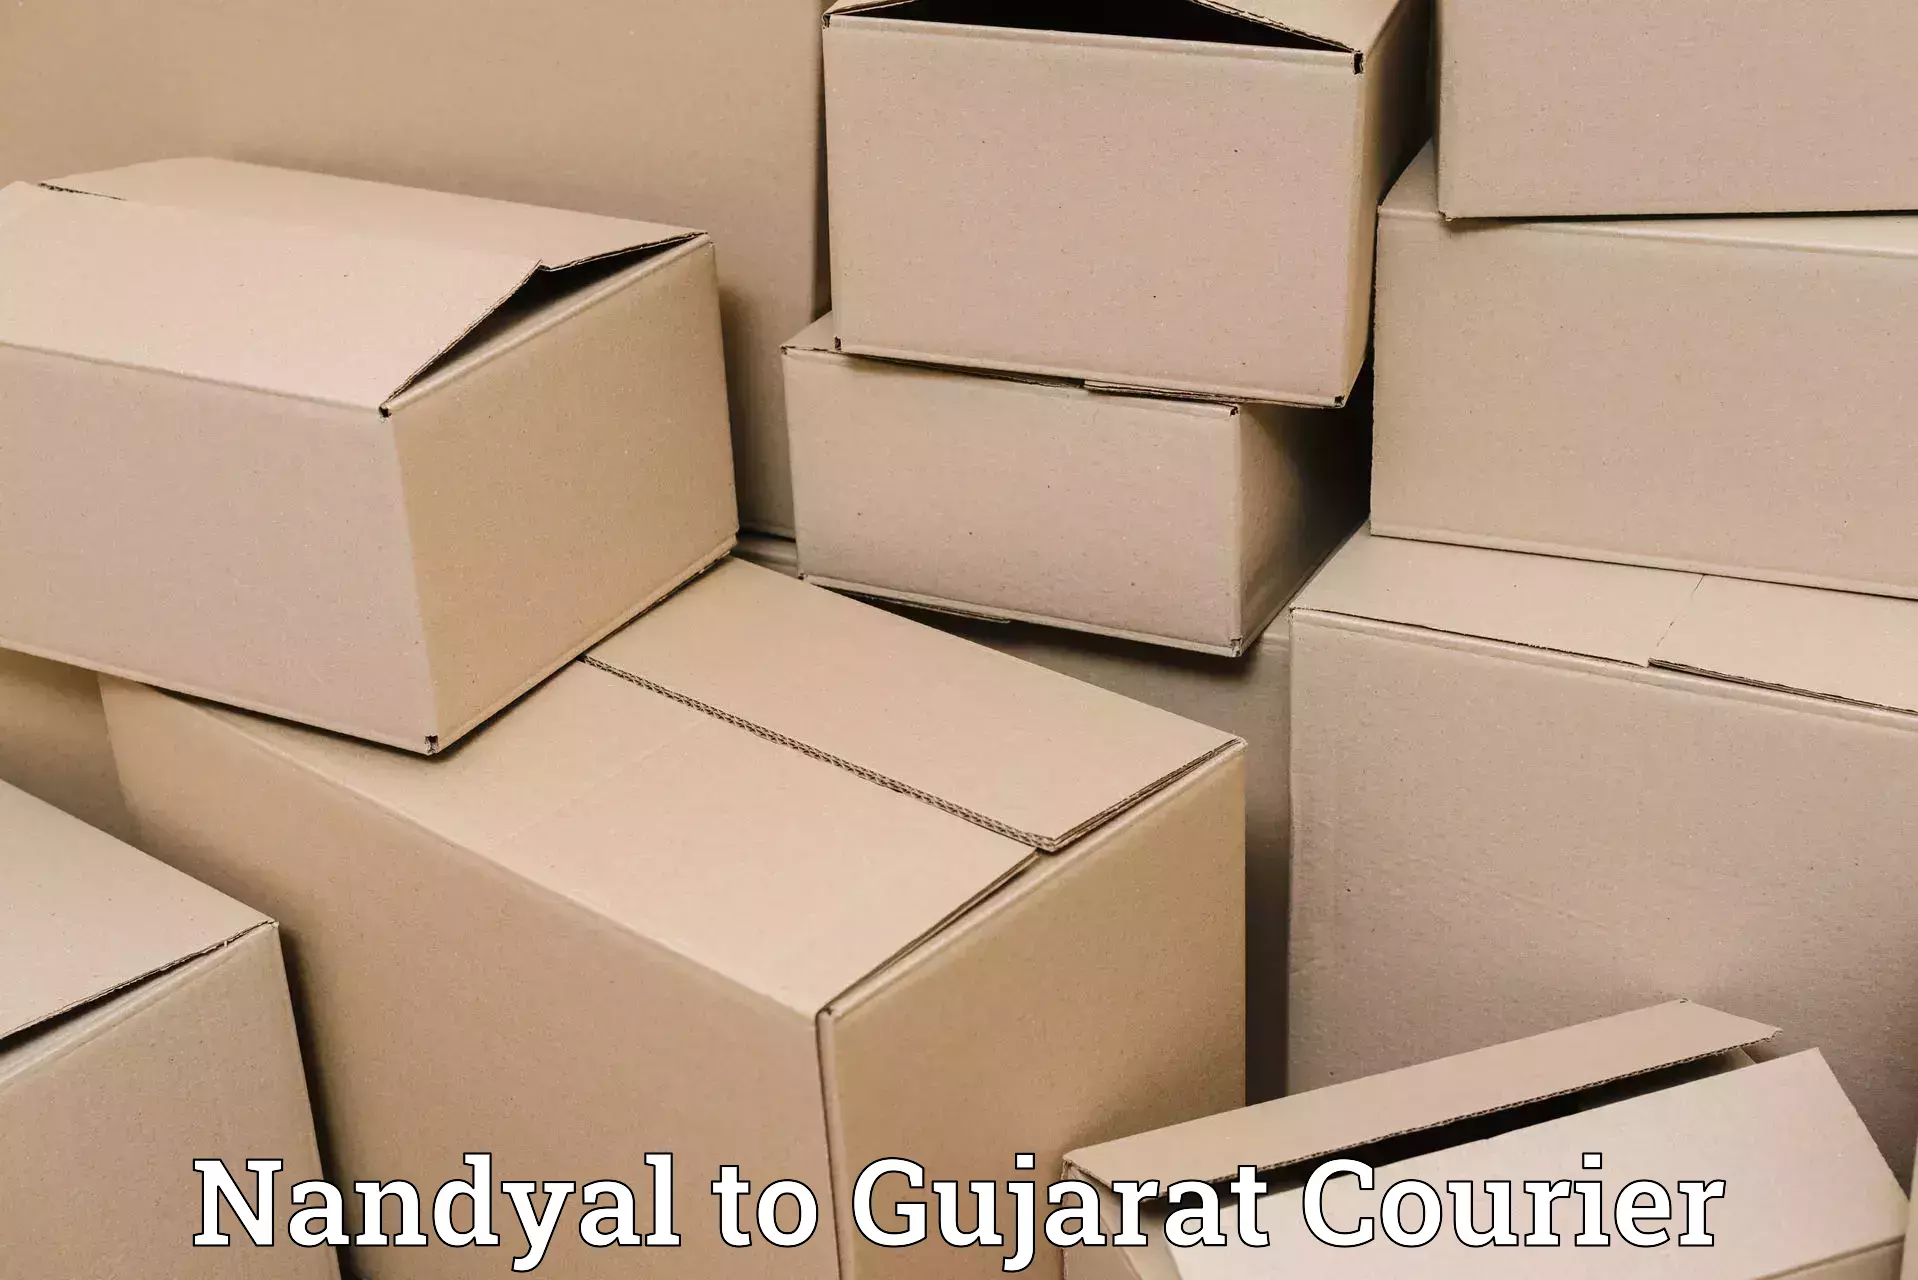 Express postal services Nandyal to Gondal